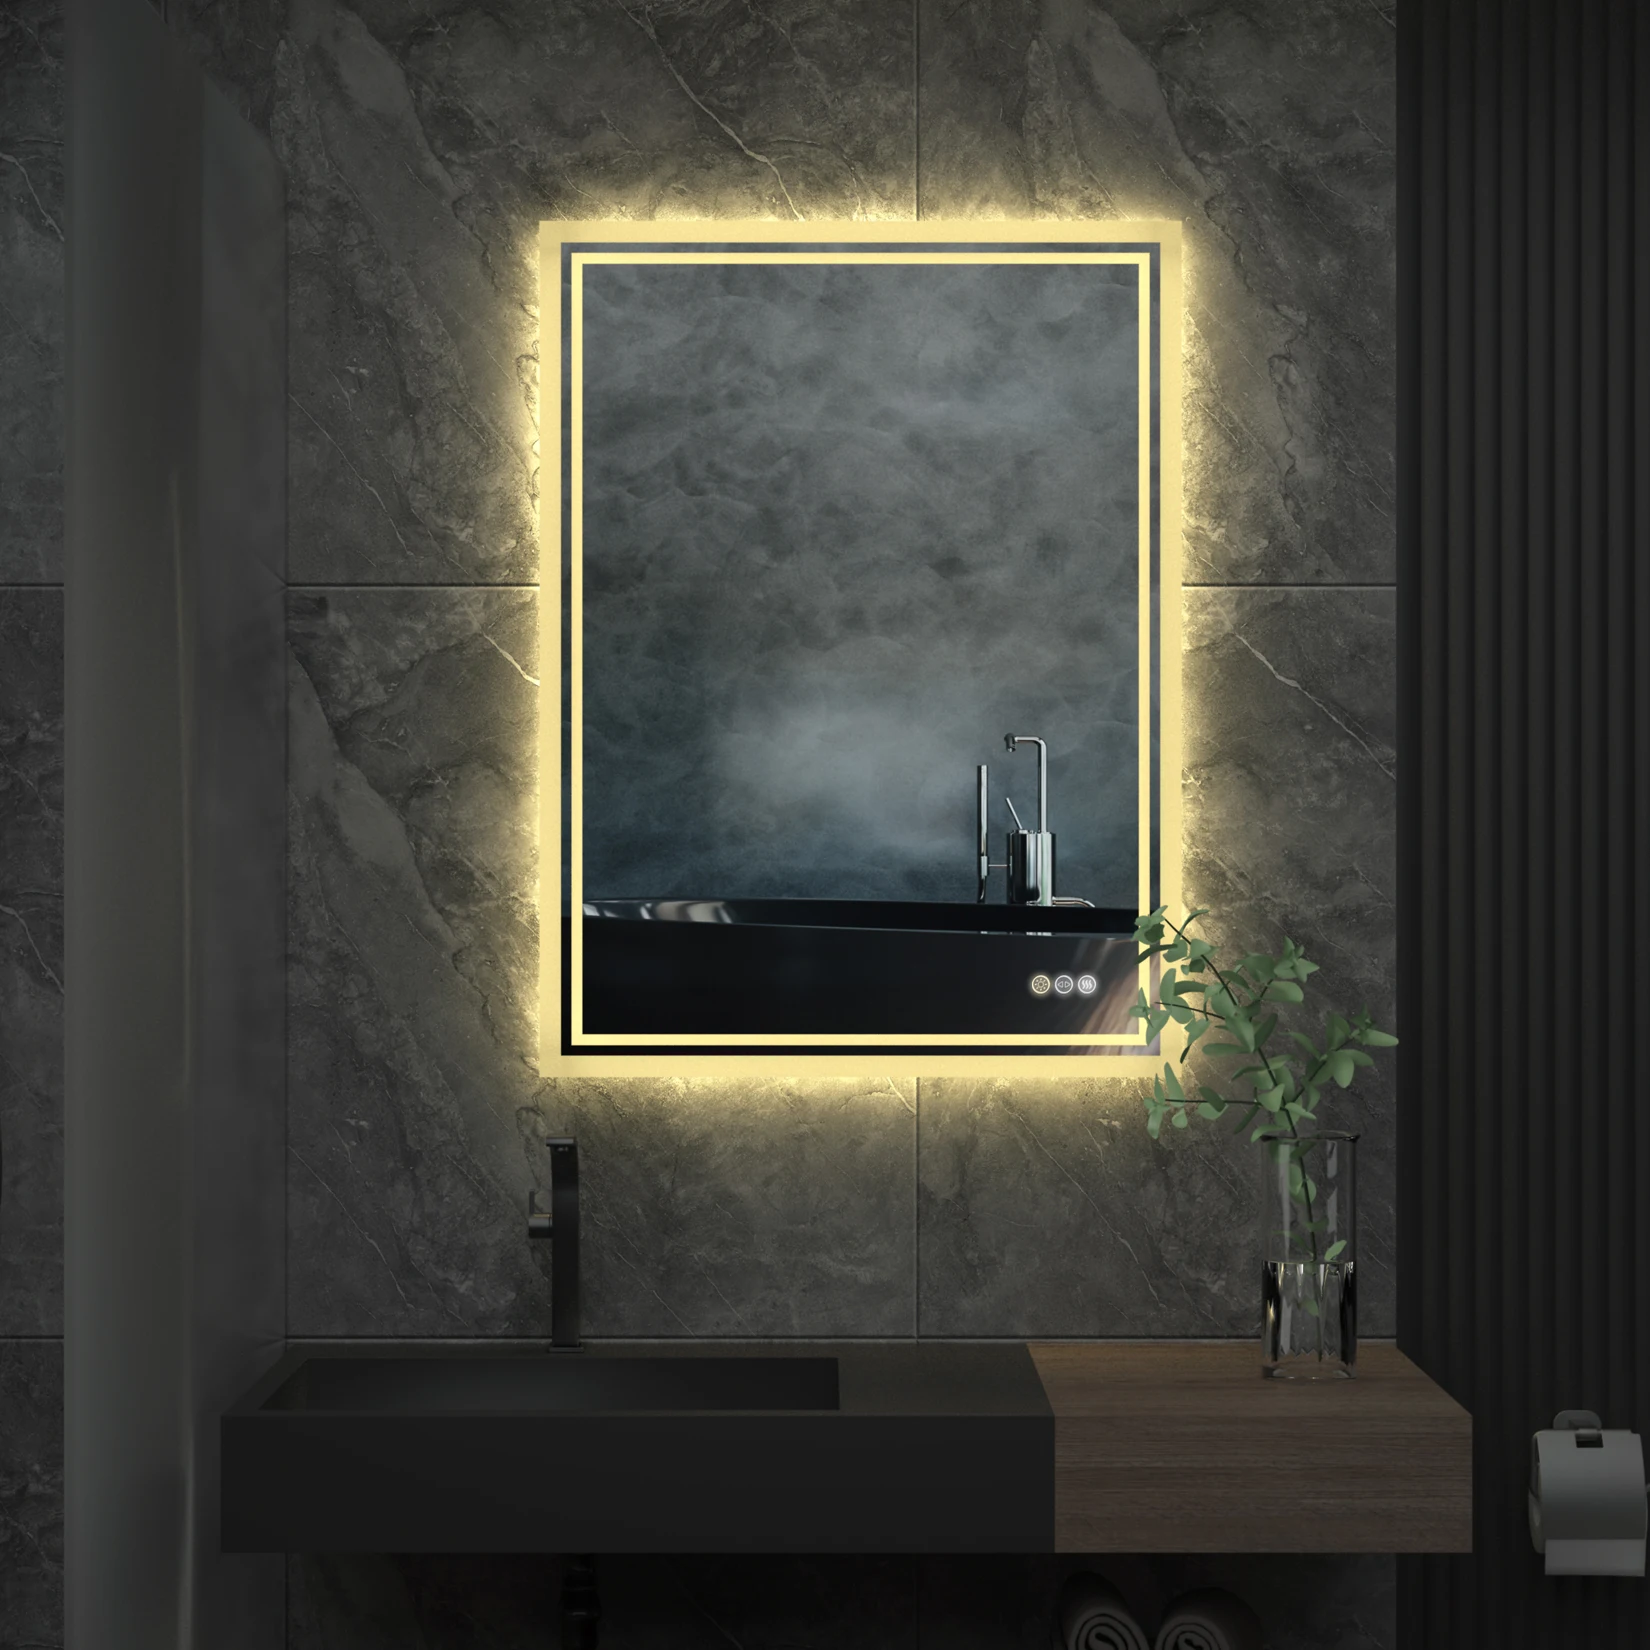 Espejo de Baño LED RGB, espejo de tocador retroiluminado grande con luces,  espejo iluminado RGB para pared, antivaho, regulable, CRI 90 - AliExpress